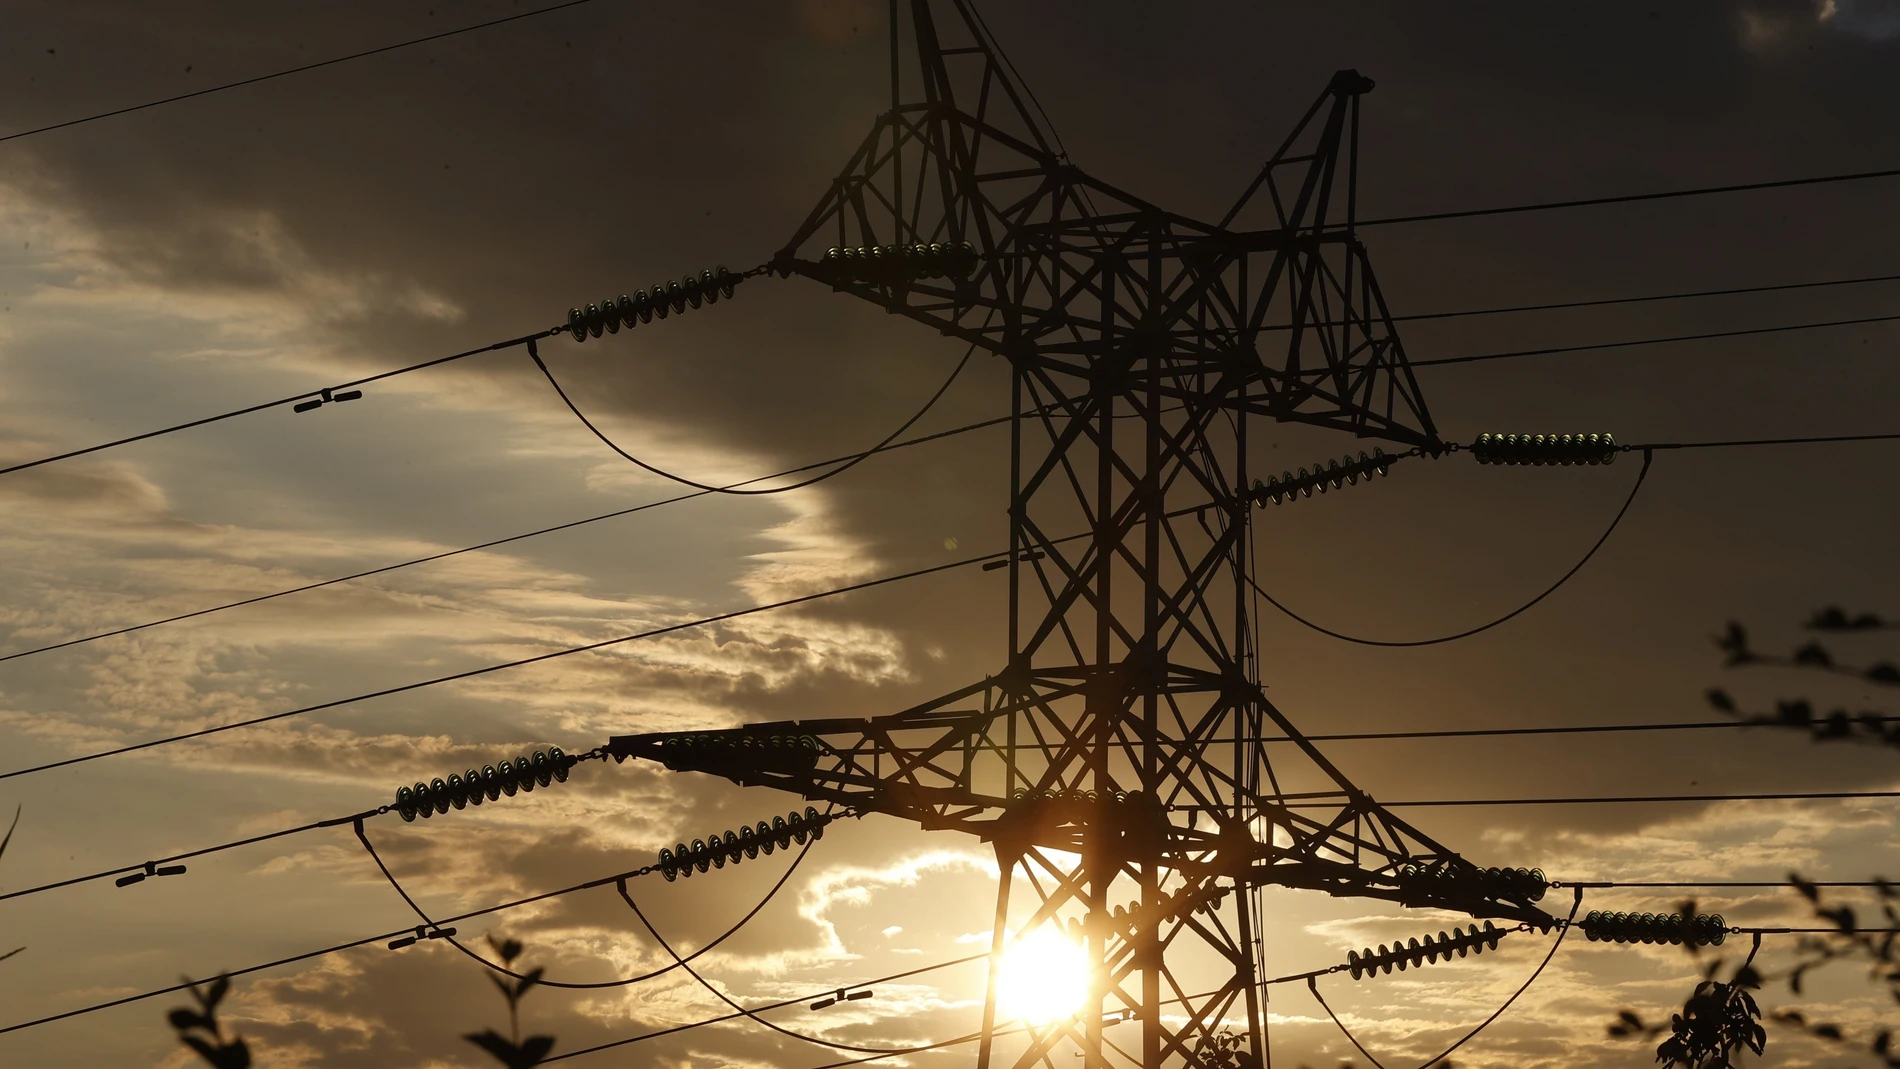 Red Eléctrica asegura que no existen indicios de que se produzca un apagón eléctrico en Europa